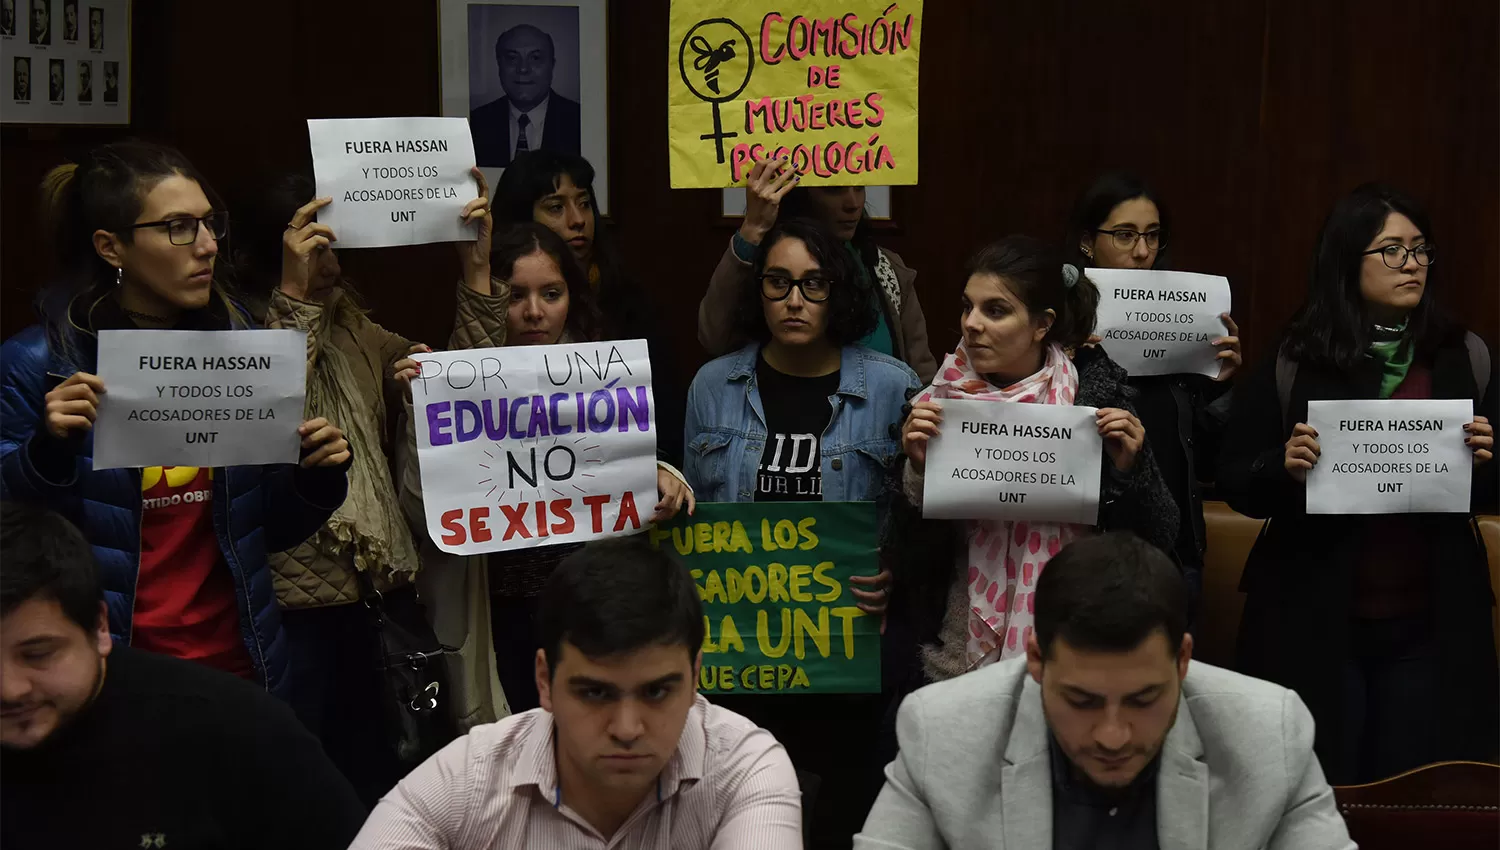 MANIFESTACIÓN. Los estudiantes se presentaron con letreros en los primeros instantes de la sesión. LA GACETA / FOTO DE DIEGO ARÁOZ